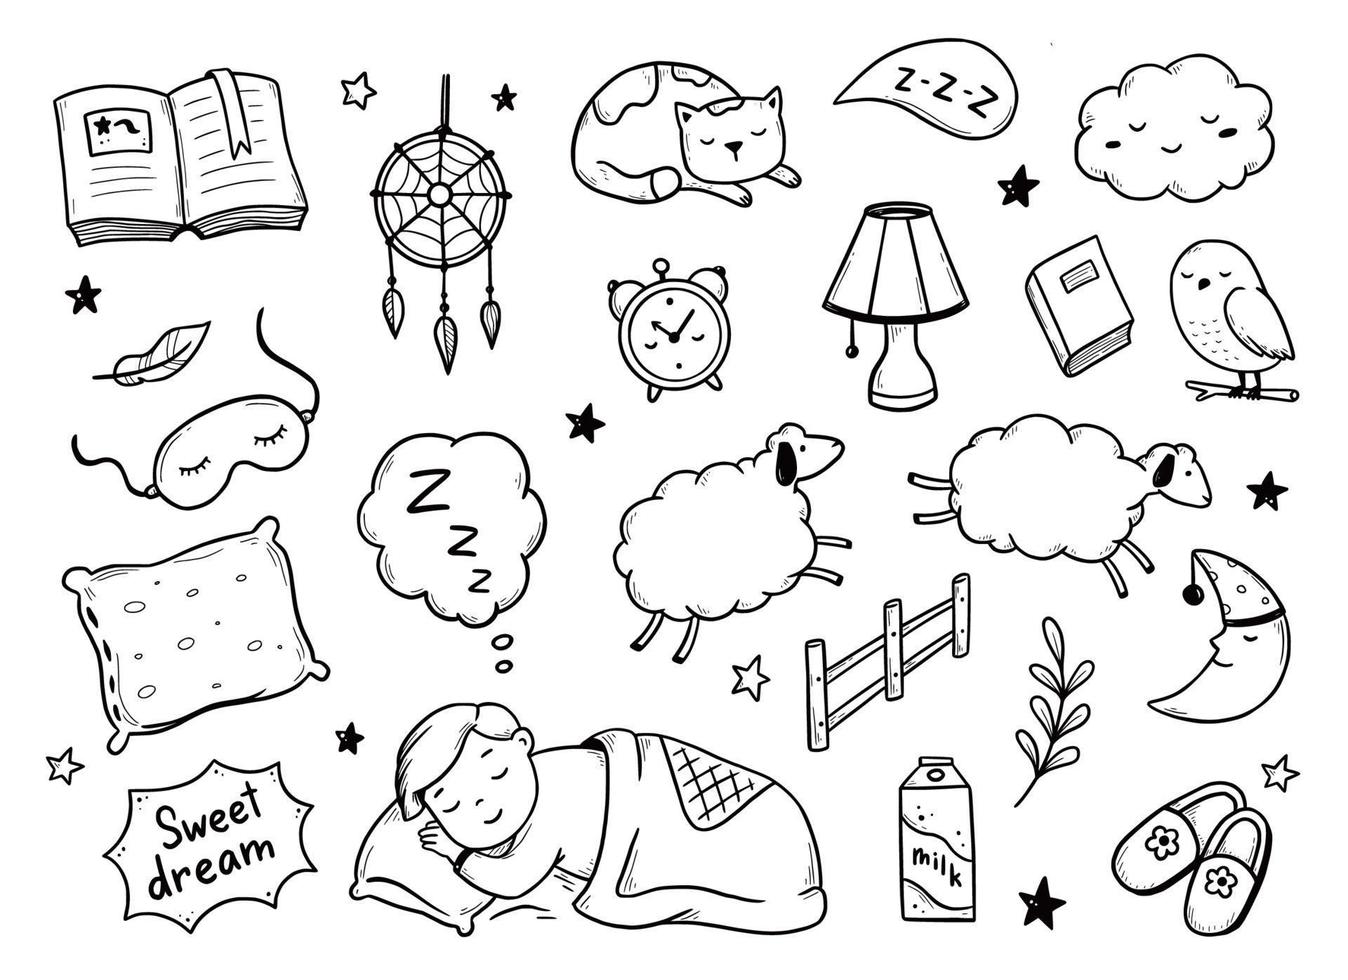 dormire, rilassarsi, sognare la notte doodle set vettore